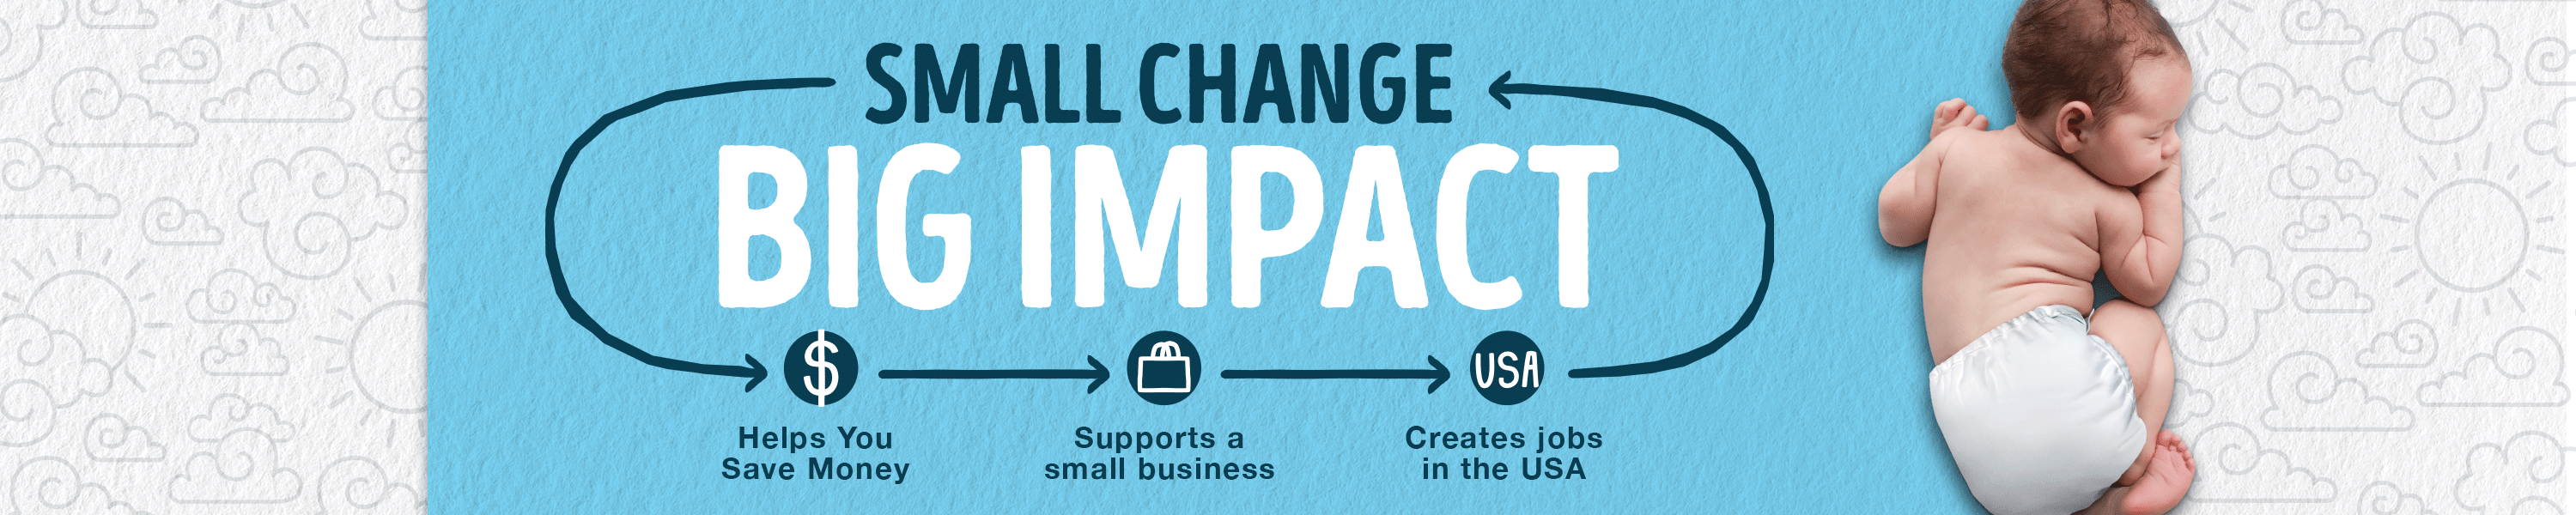 Image of Small change, Big Impact